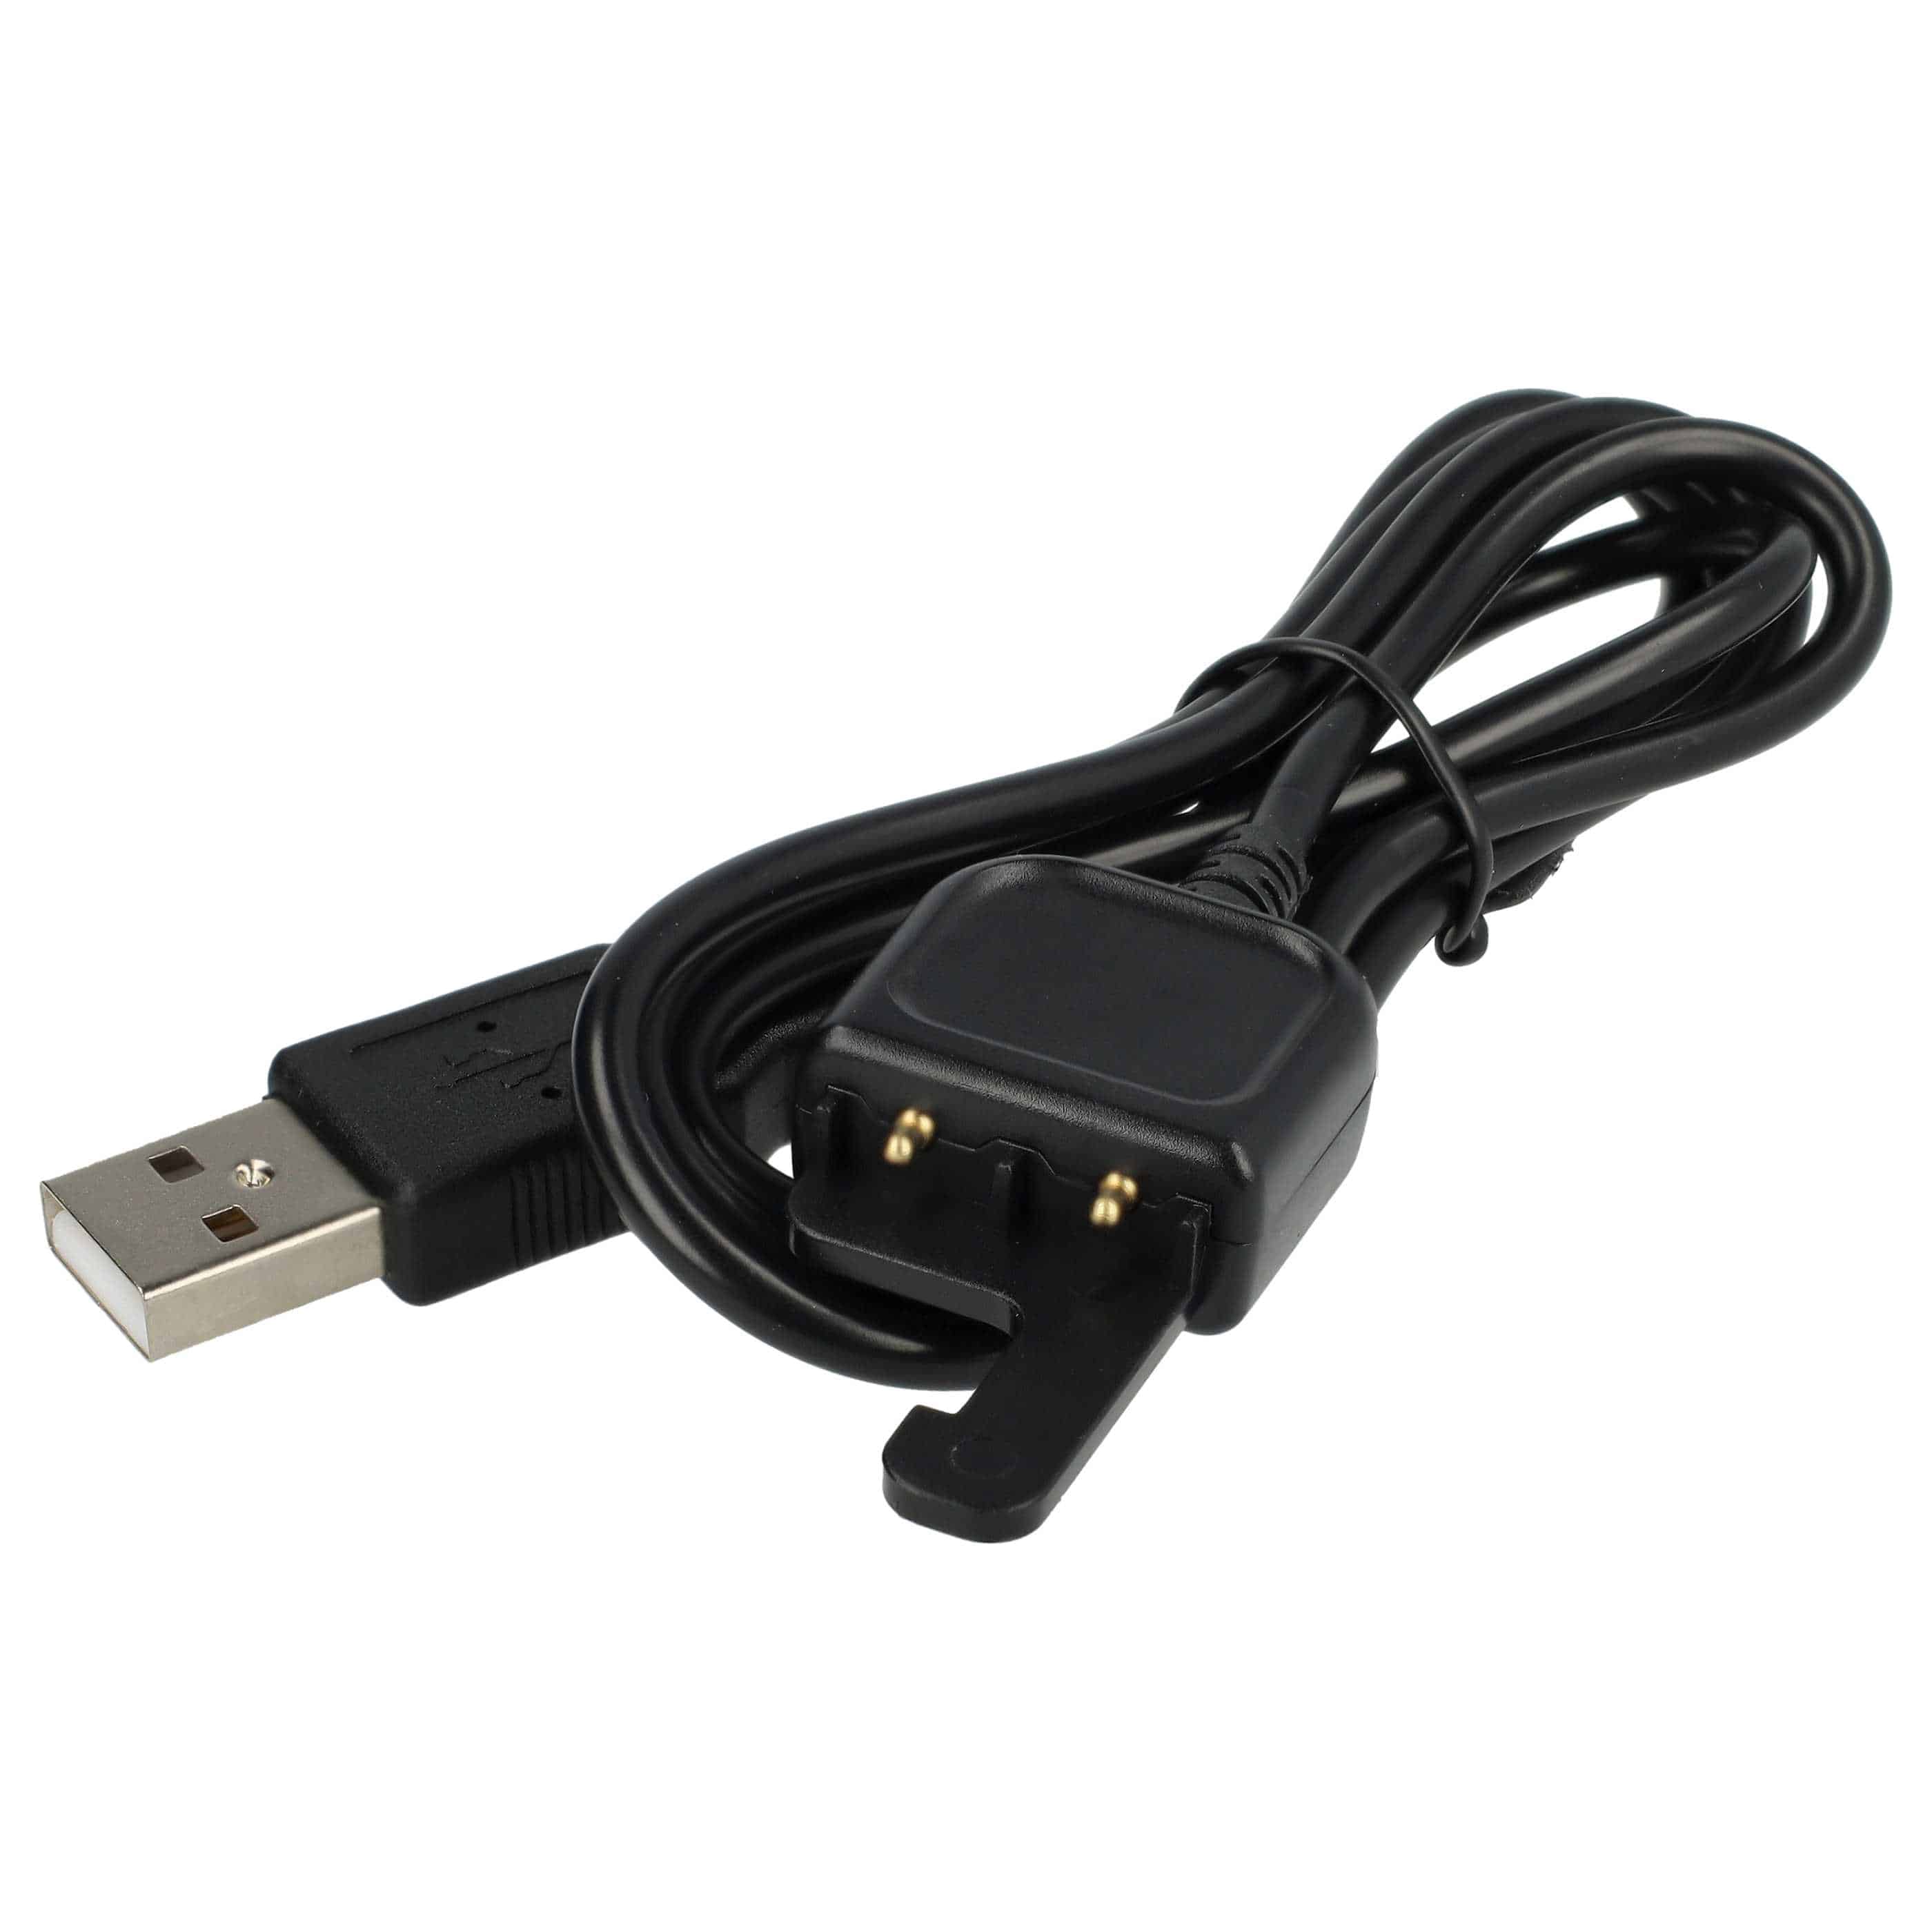 Kabel USB do pilota zdalnego sterowania GoPro zamiennik AWRCC-001 - 50 cm, czarny